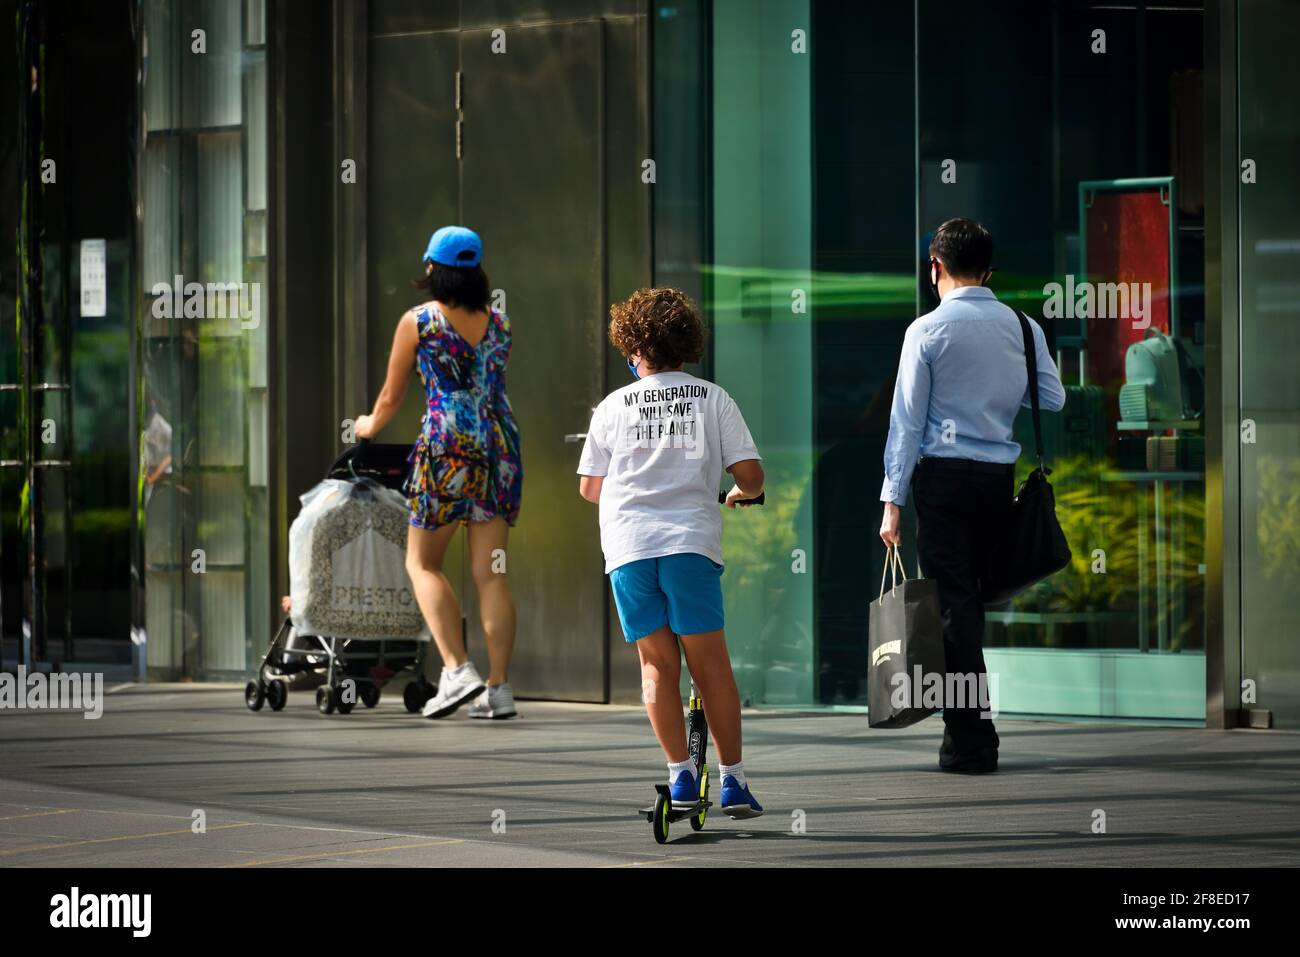 Ragazzo adolescente su scooter con maschera e T-shirt con Slogan "la mia generazione salverà il pianeta" su Orchard Road Singapore 13 aprile 2021 Foto Stock